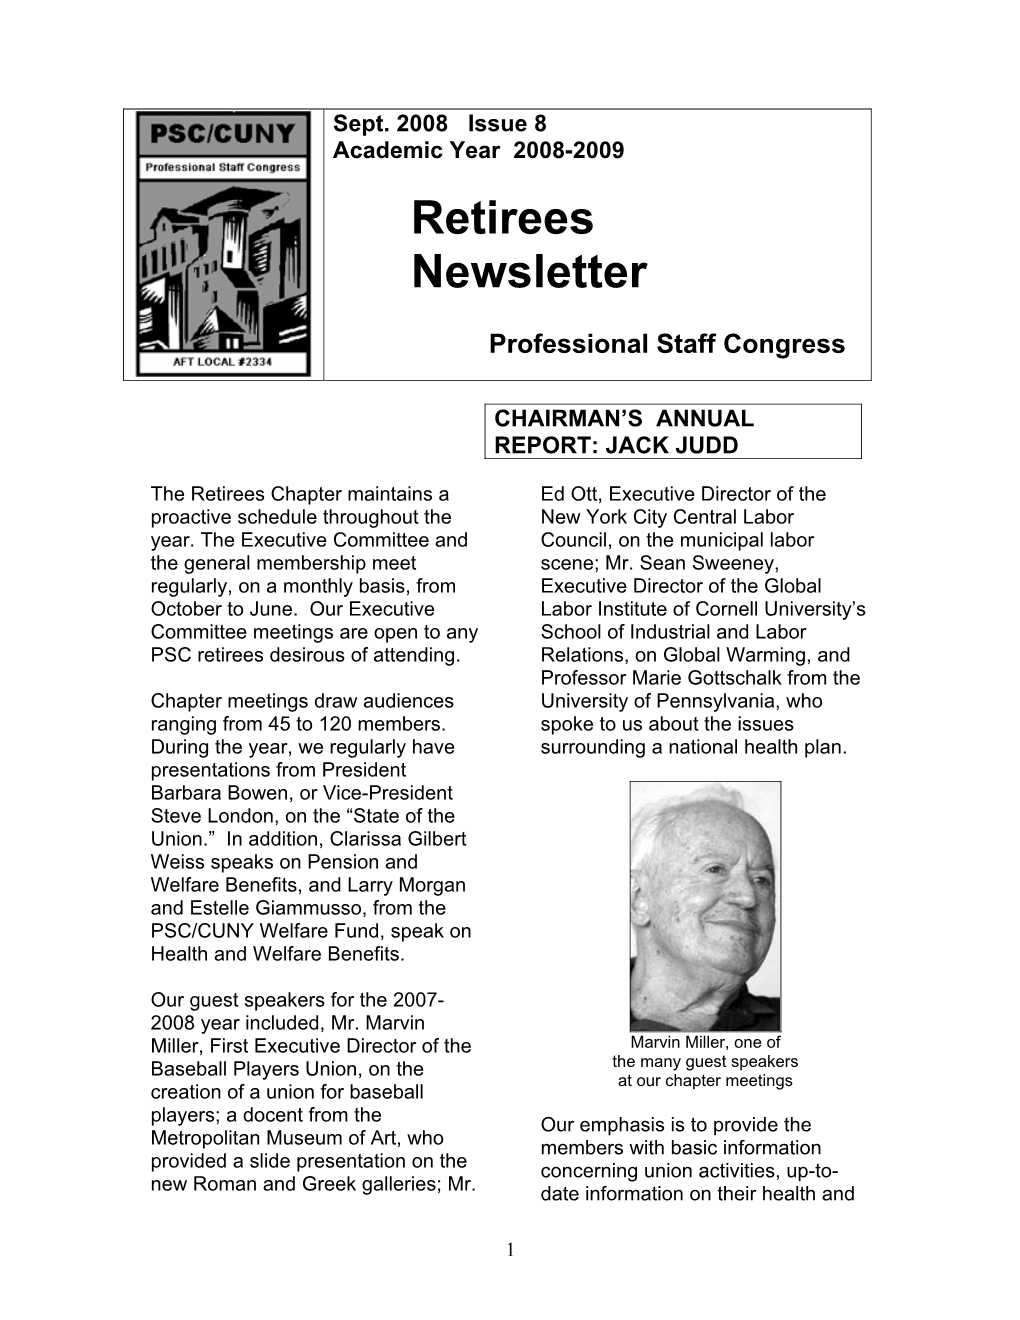 Retirees Newsletter